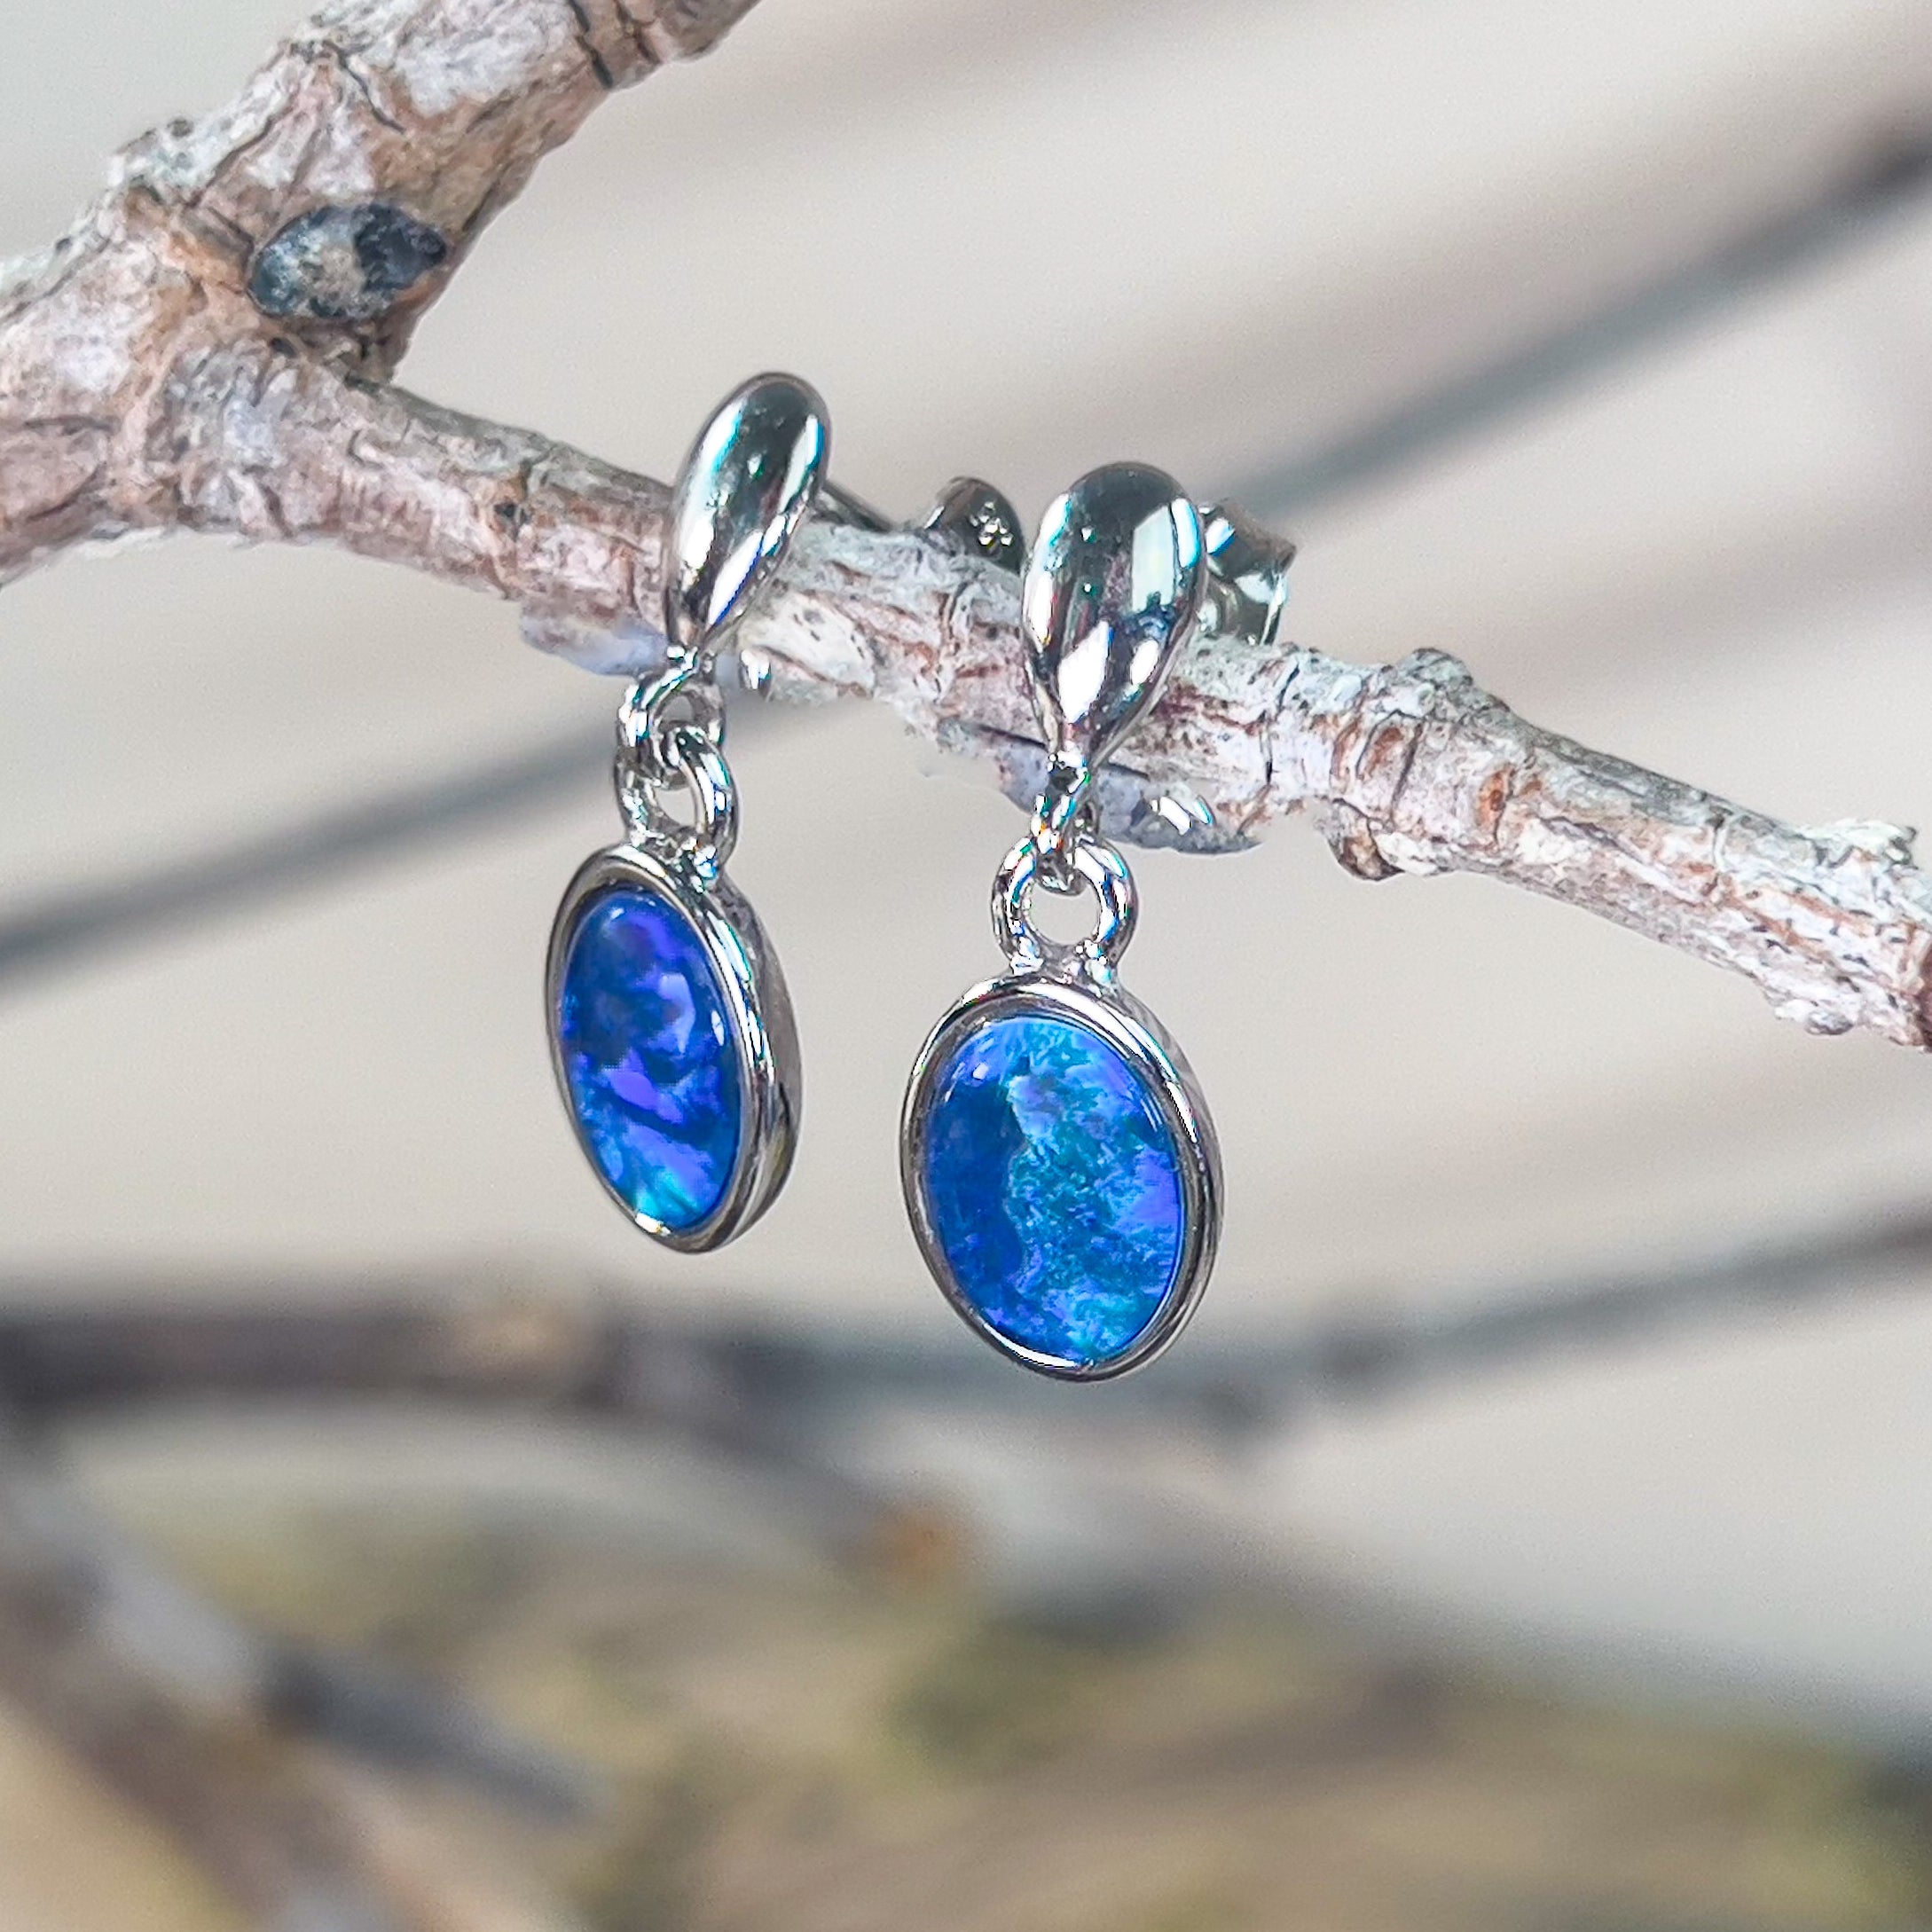 Sterling Silver dangling Oval Opal triplet earrings - Masterpiece Jewellery Opal & Gems Sydney Australia | Online Shop